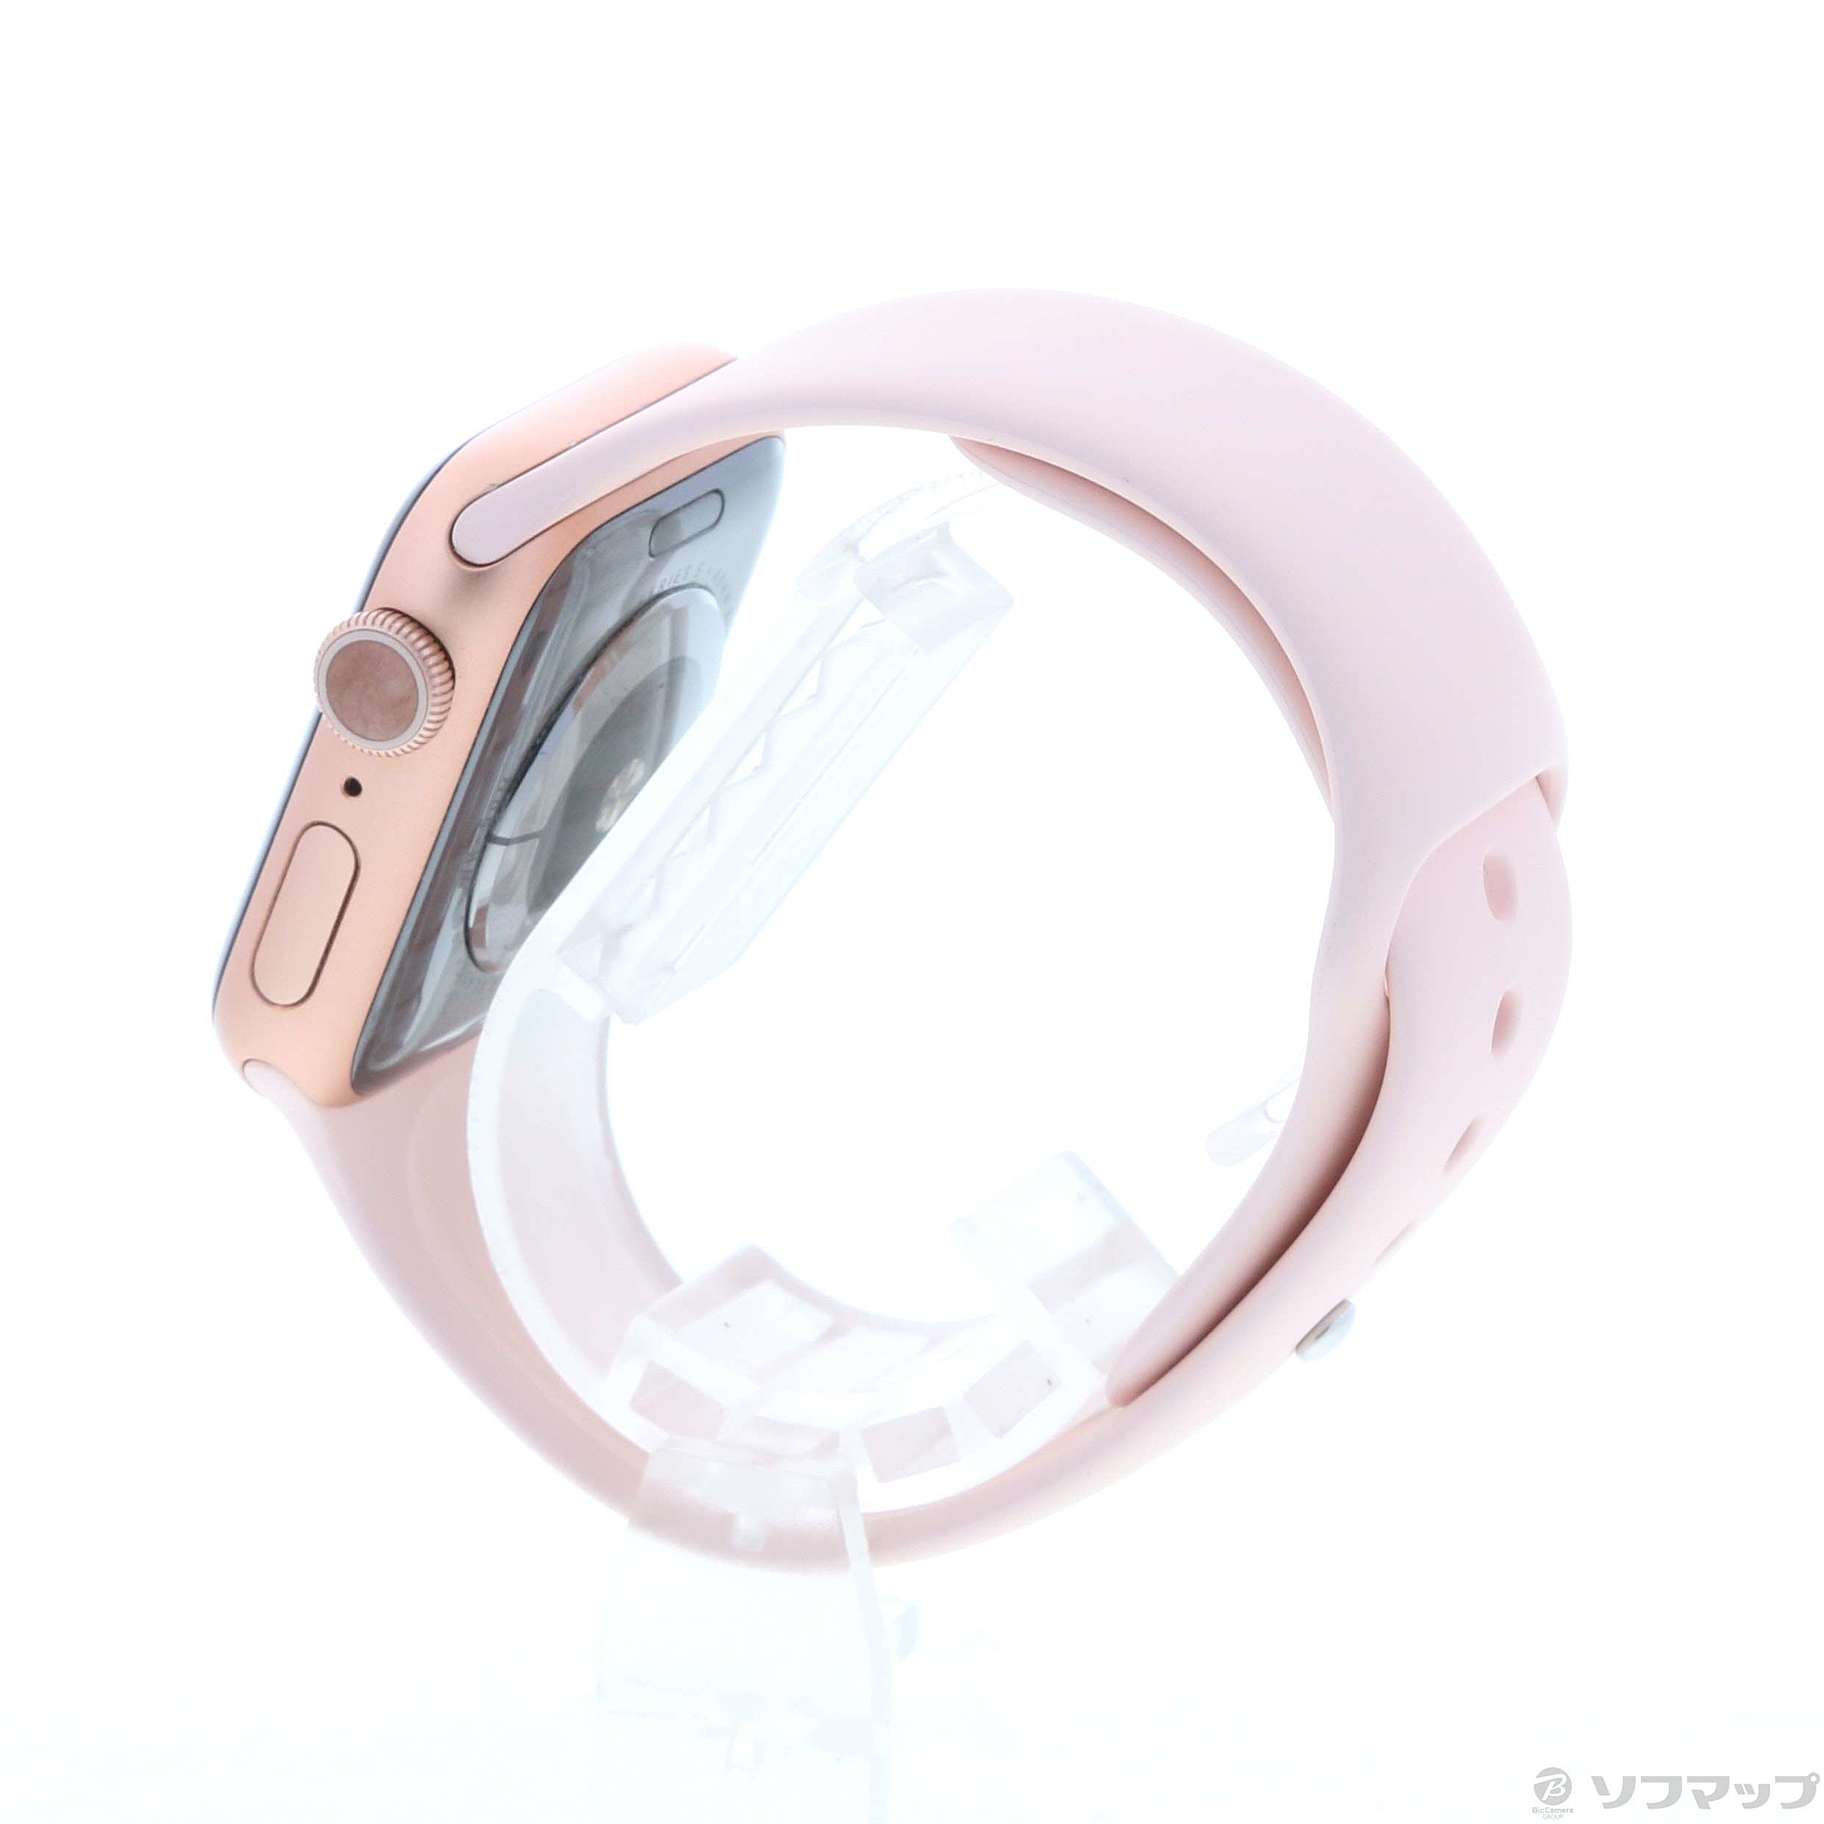 中古】Apple Watch Series 5 GPS 40mm ゴールドアルミニウムケース ...